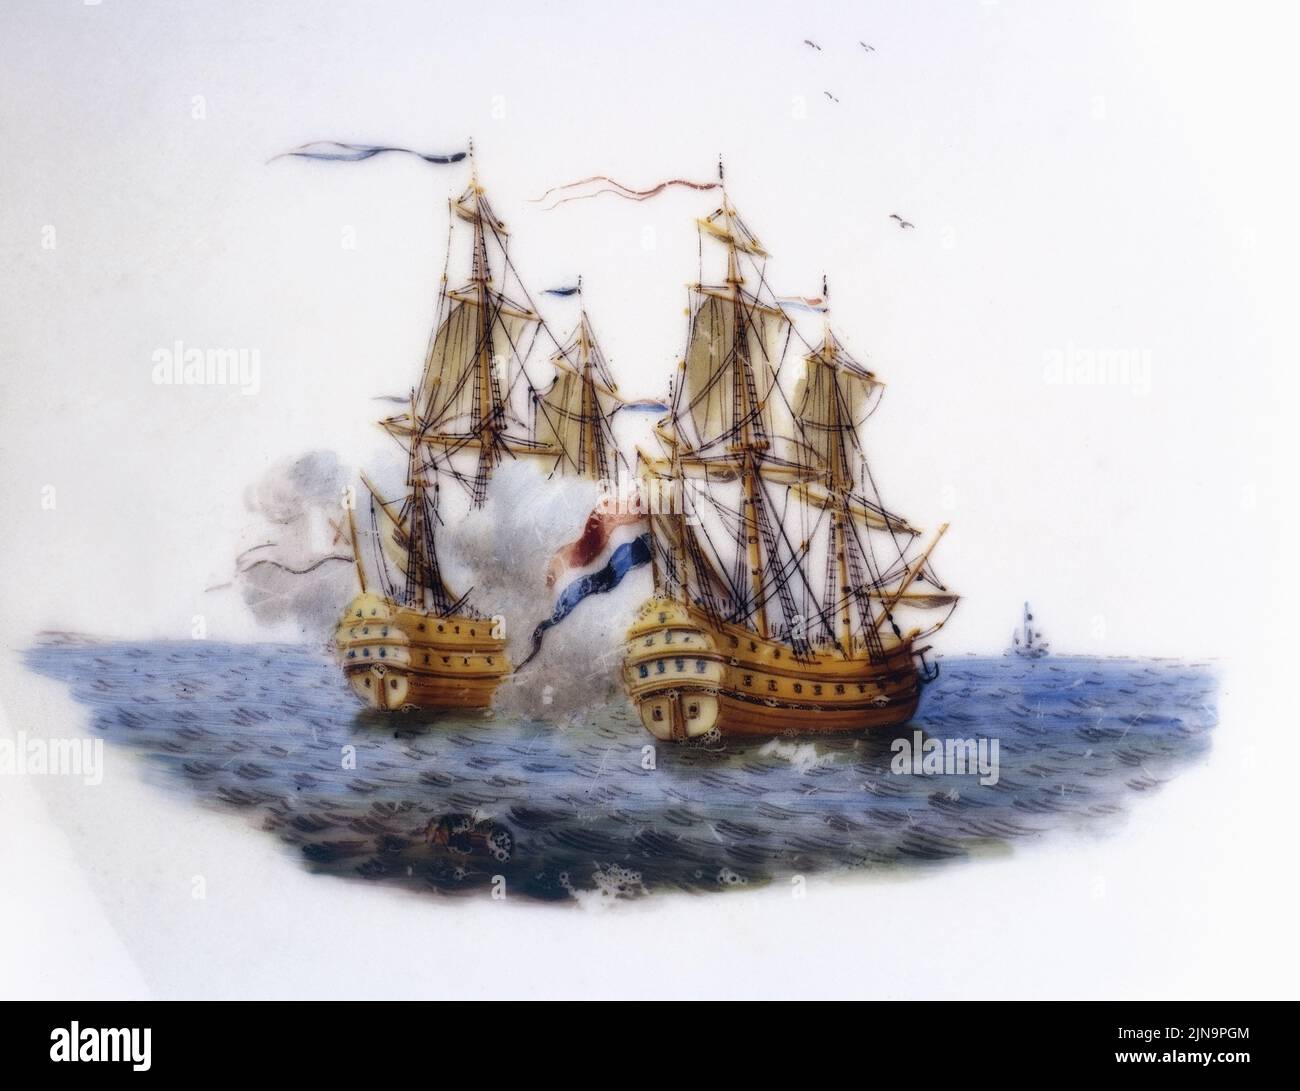 Bruxelles, Belgio - 09 agosto 2022: Motivo centrale di una pentola di porcellana Tournai decorata con una scena di combattimento navale Foto Stock